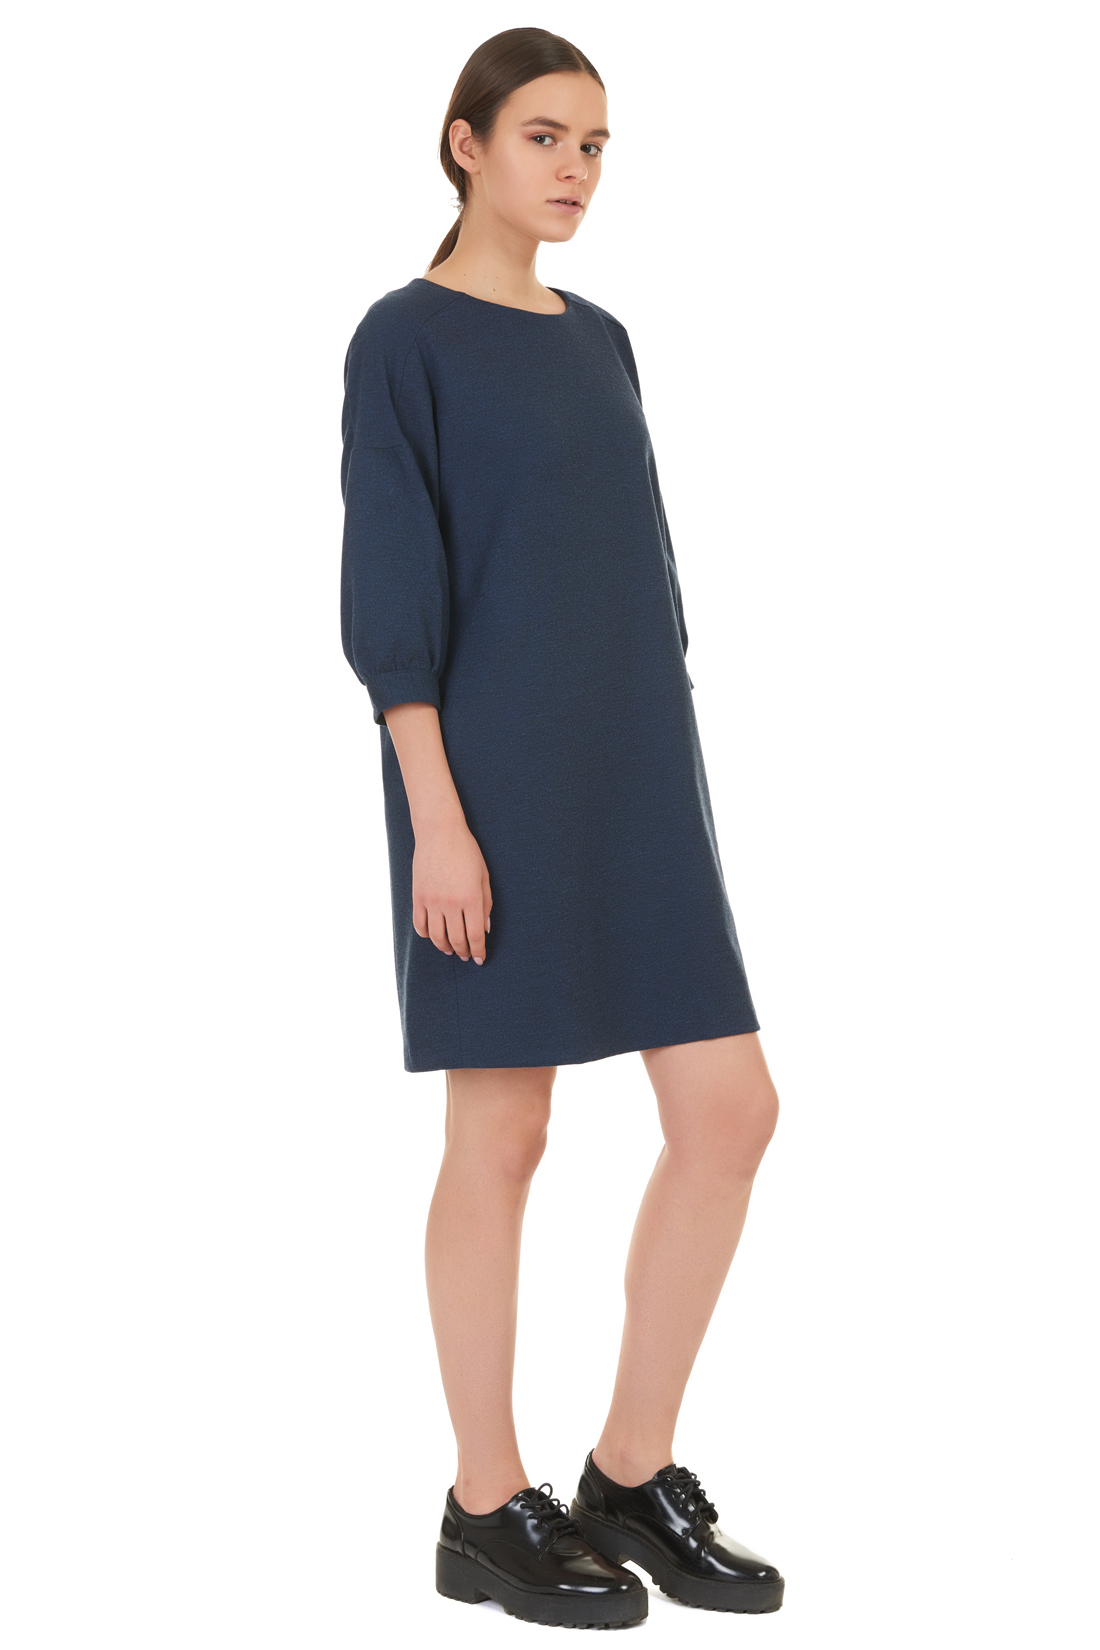 Платье с оригинальными рукавами (арт. baon B457519), размер XXL, цвет blue night melange#синий Платье с оригинальными рукавами (арт. baon B457519) - фото 4